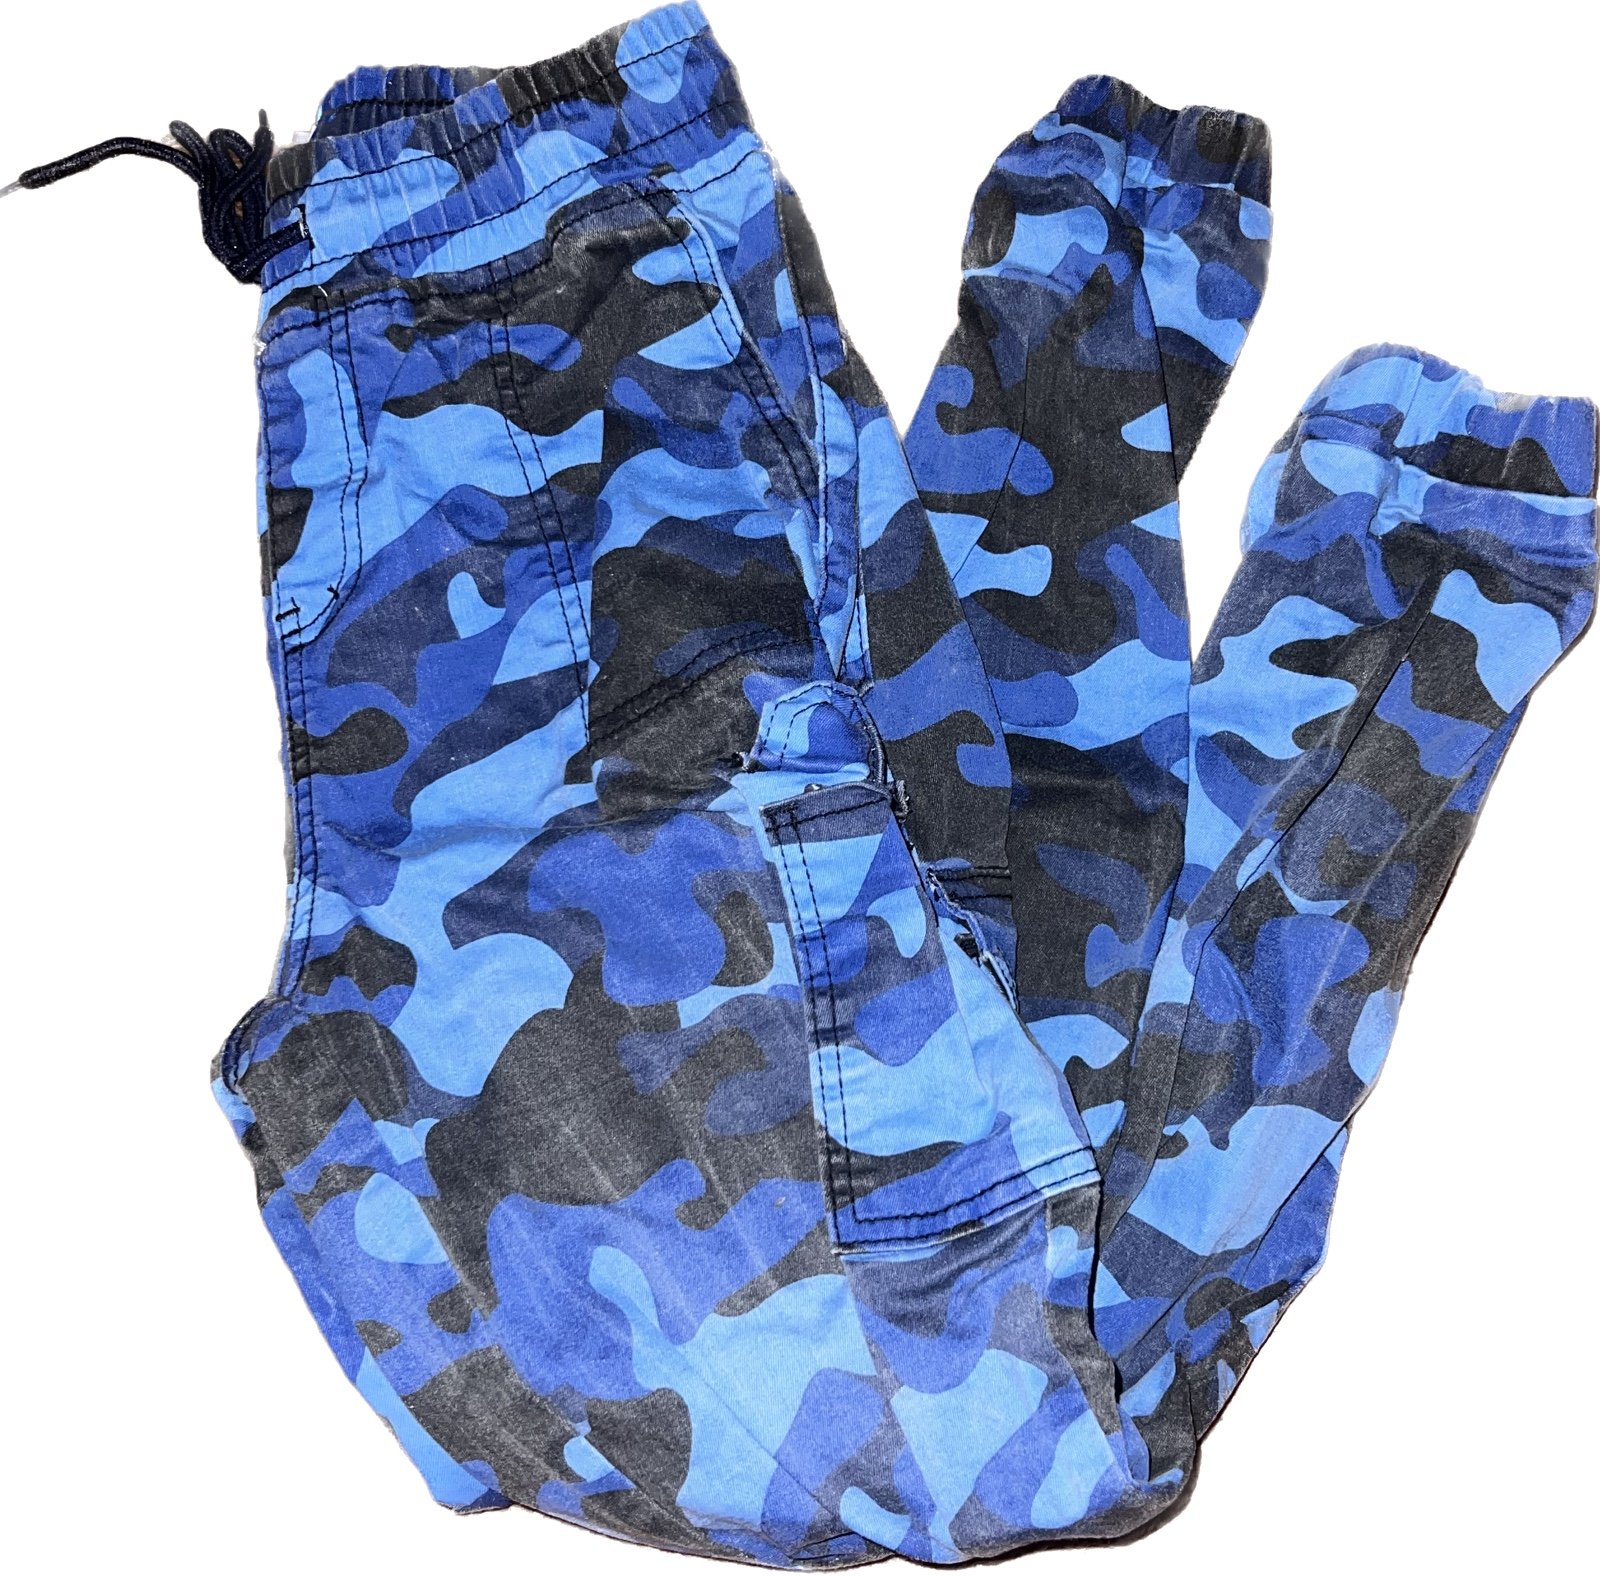 High quality blu camo cargo pants iRm3MWbZy US Sale